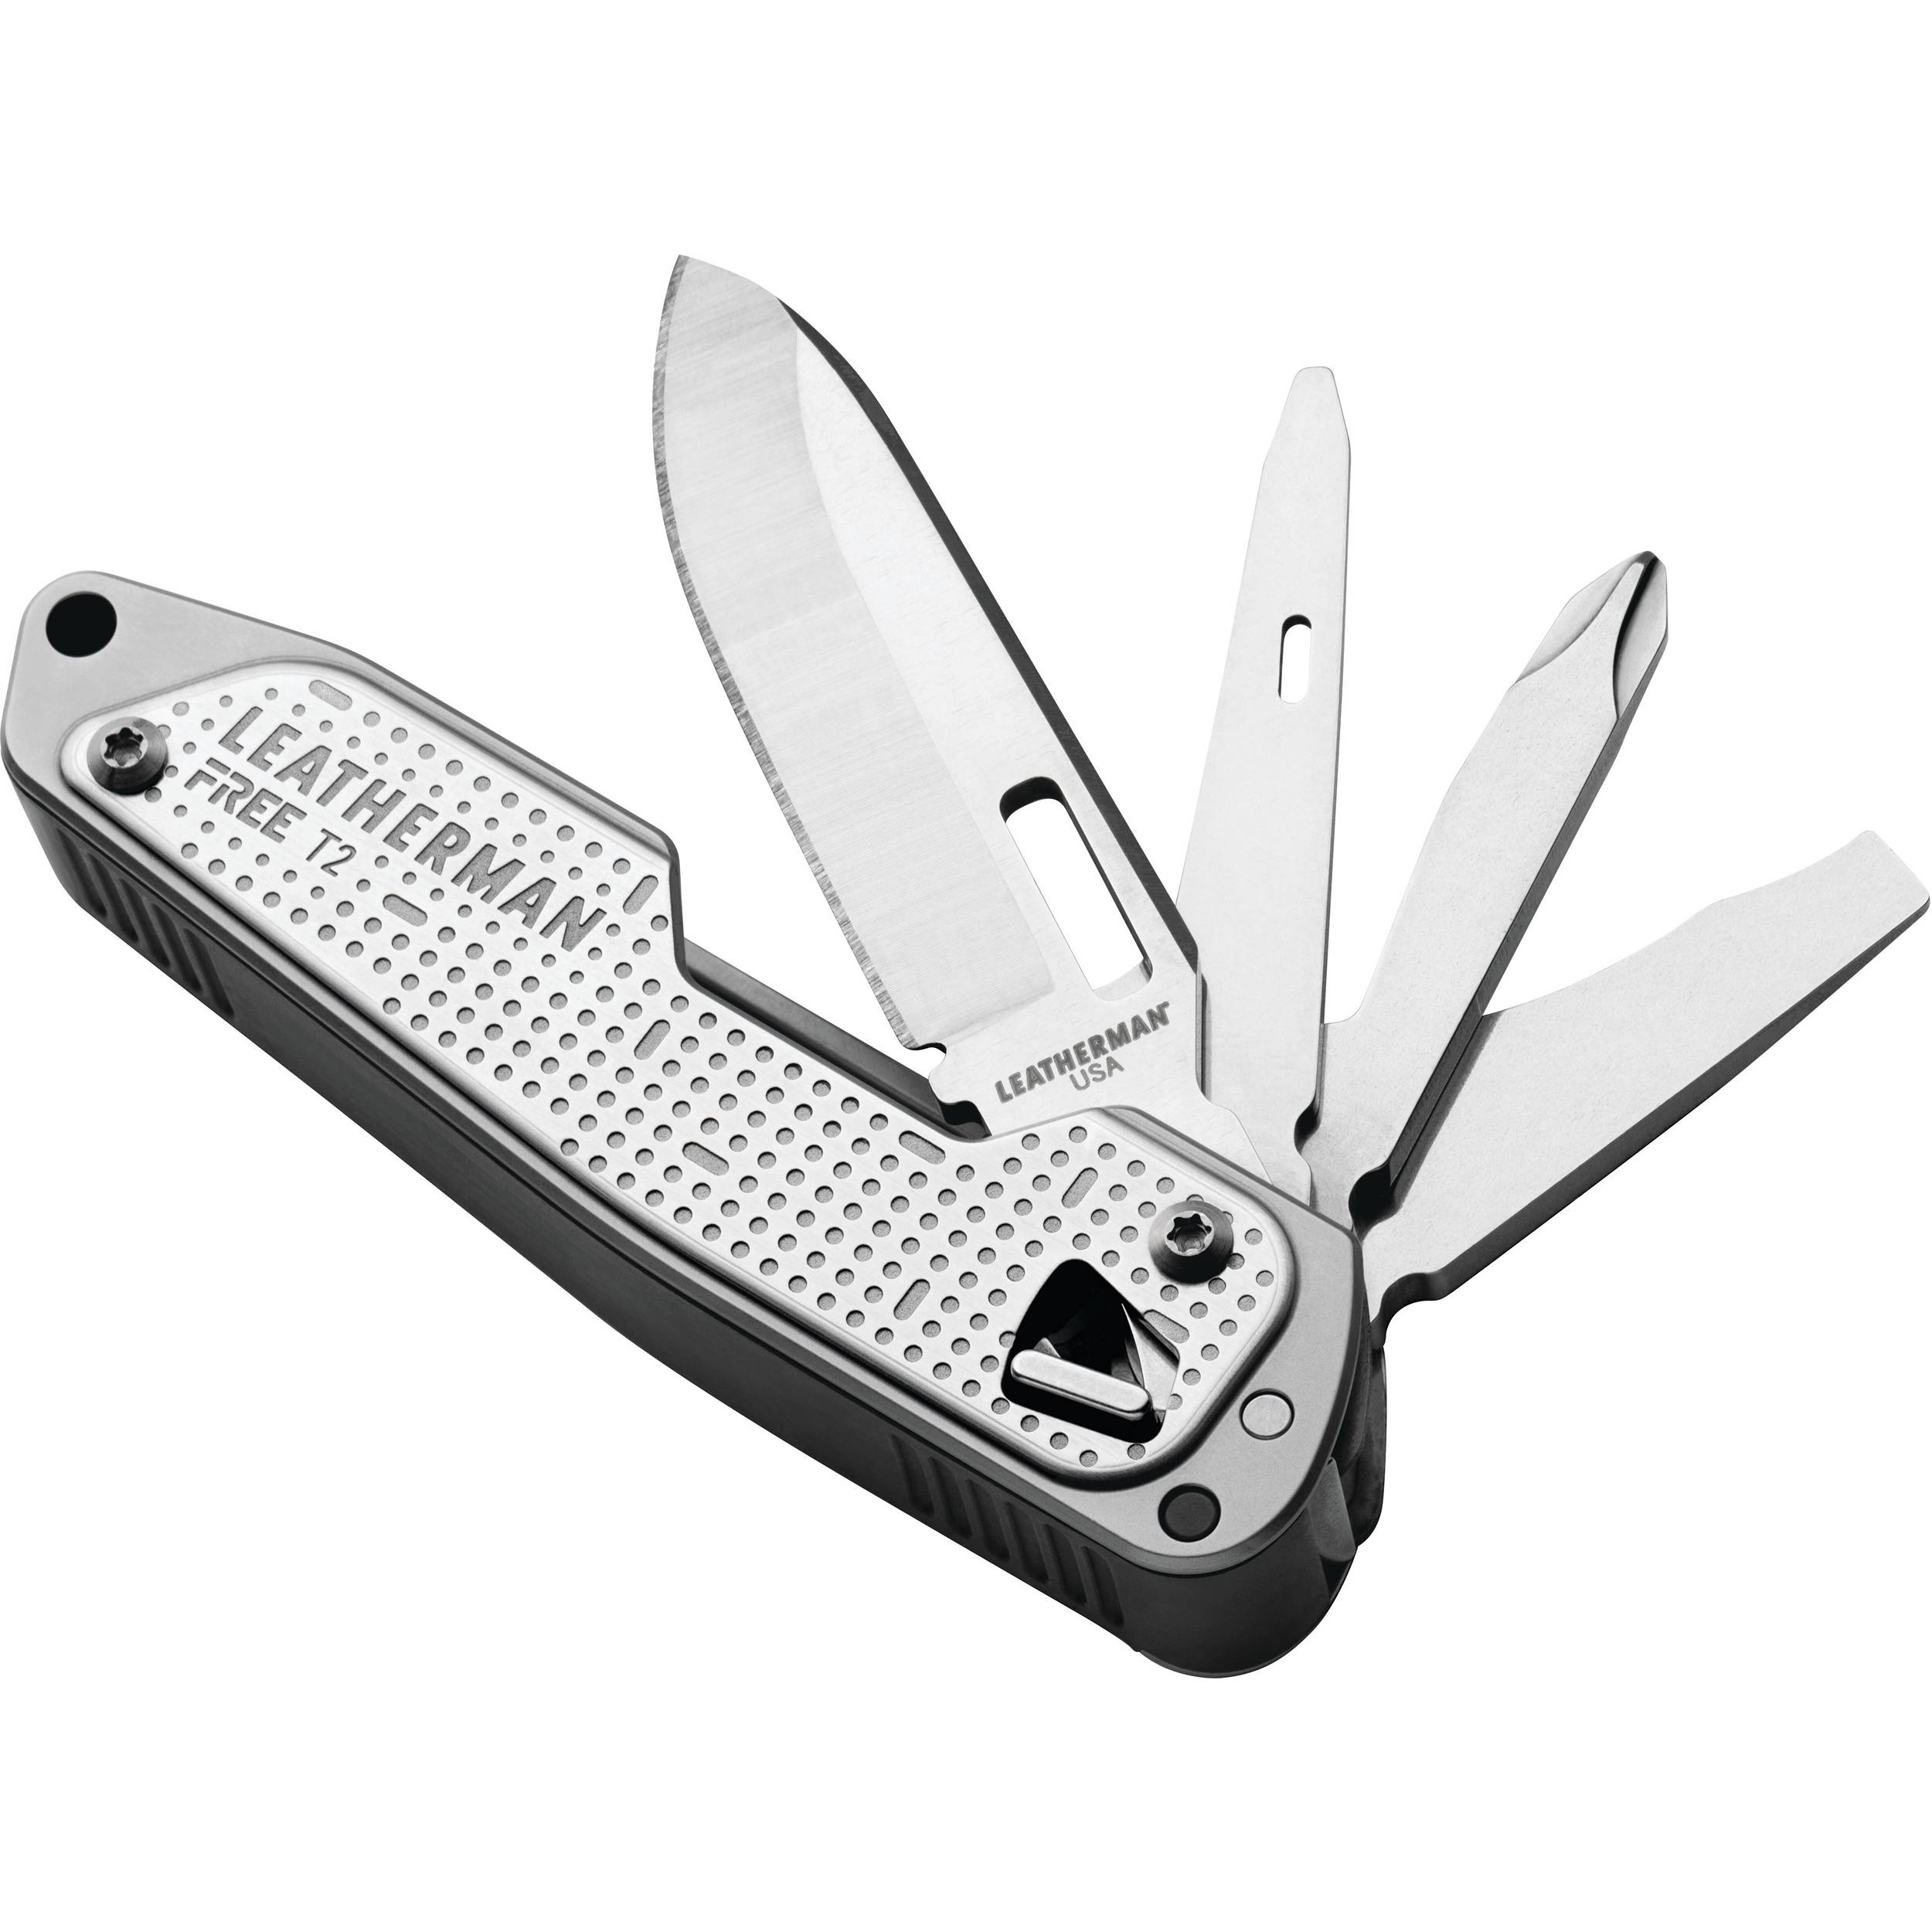 Leatherman FREE T2 Pocket Knife Multi-Tool